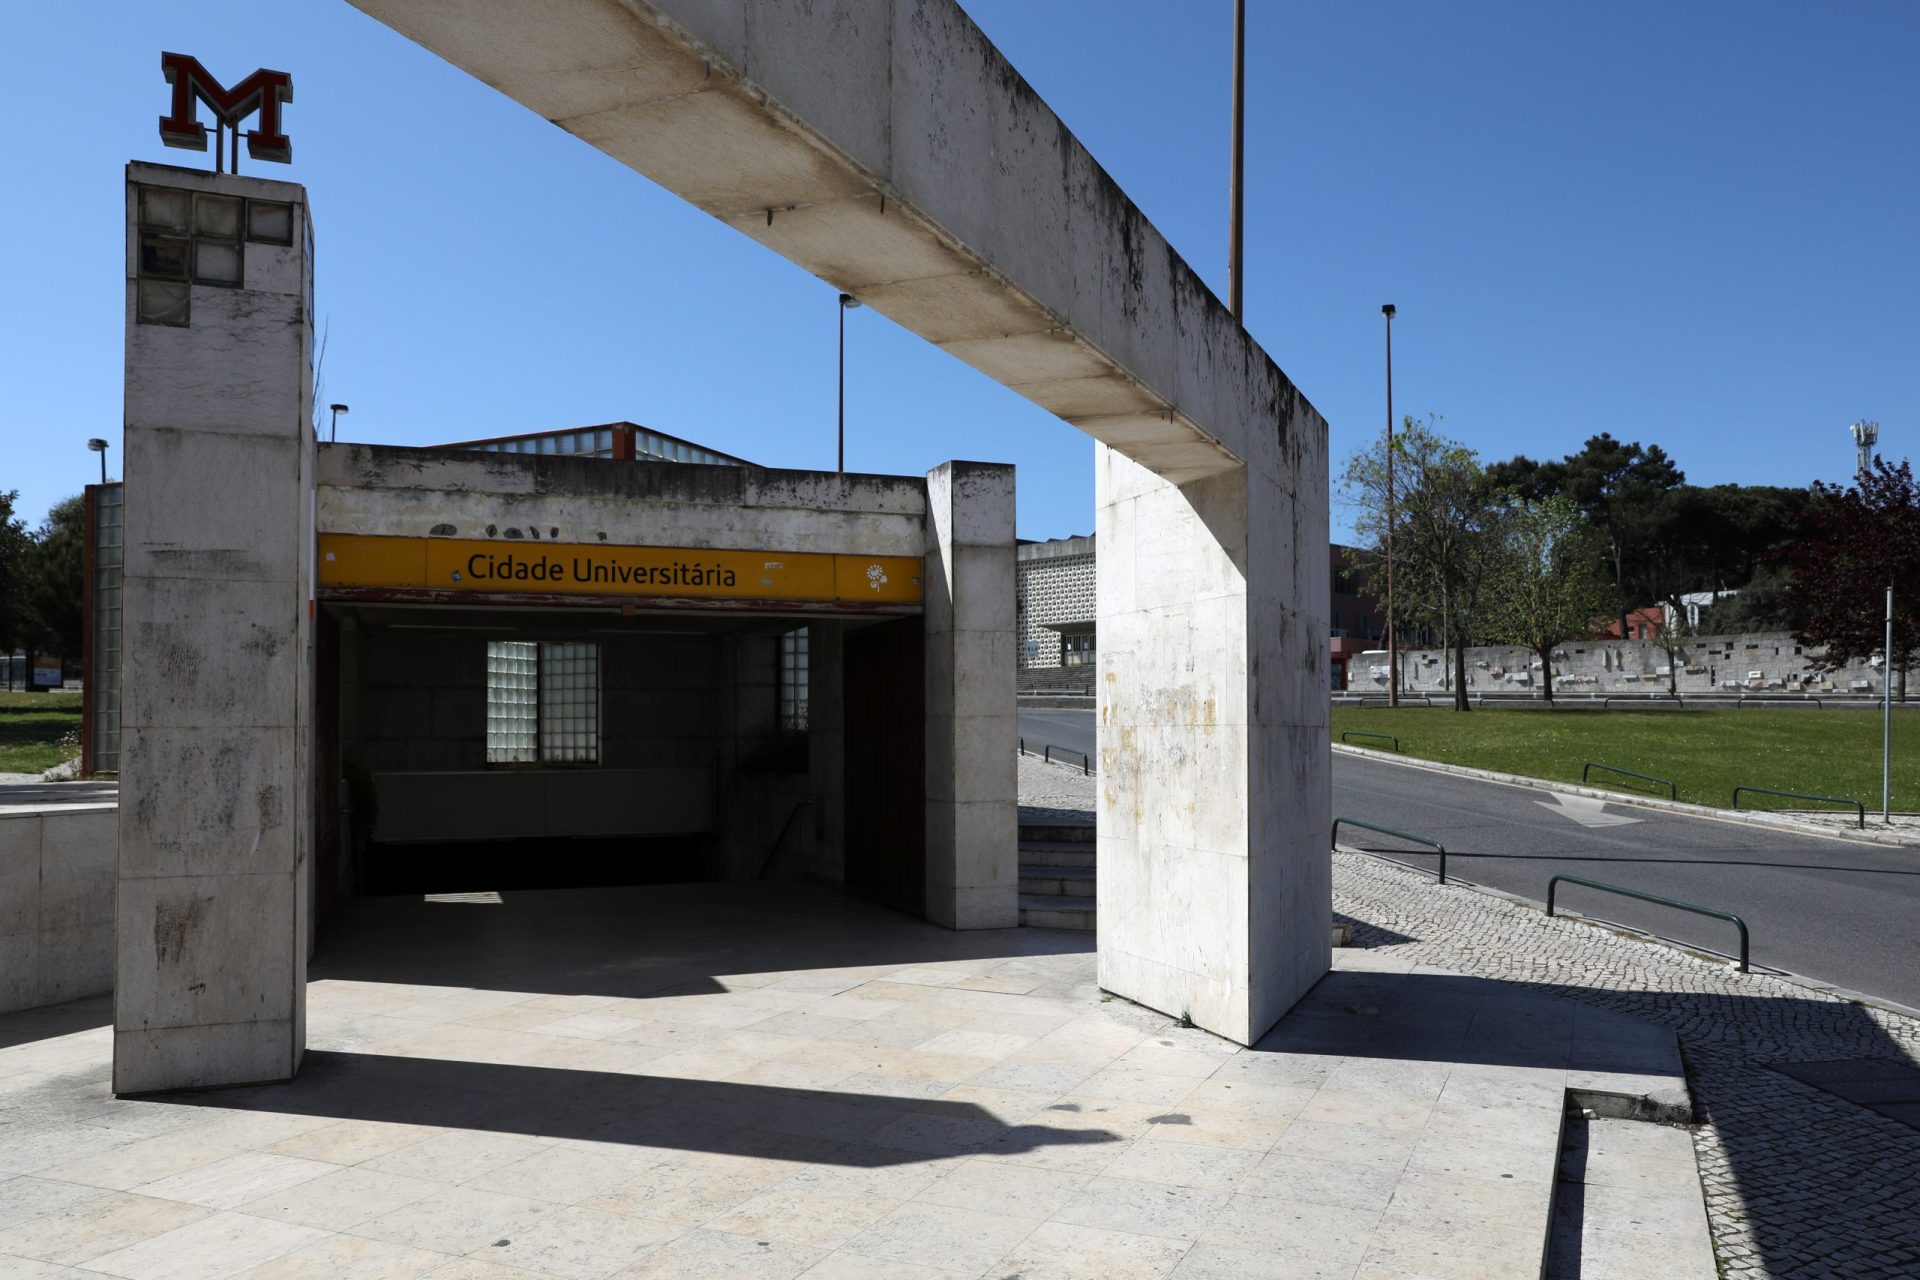 Encerramento temporário do metro da Cidade Universitária adiado devido às eleições brasileiras